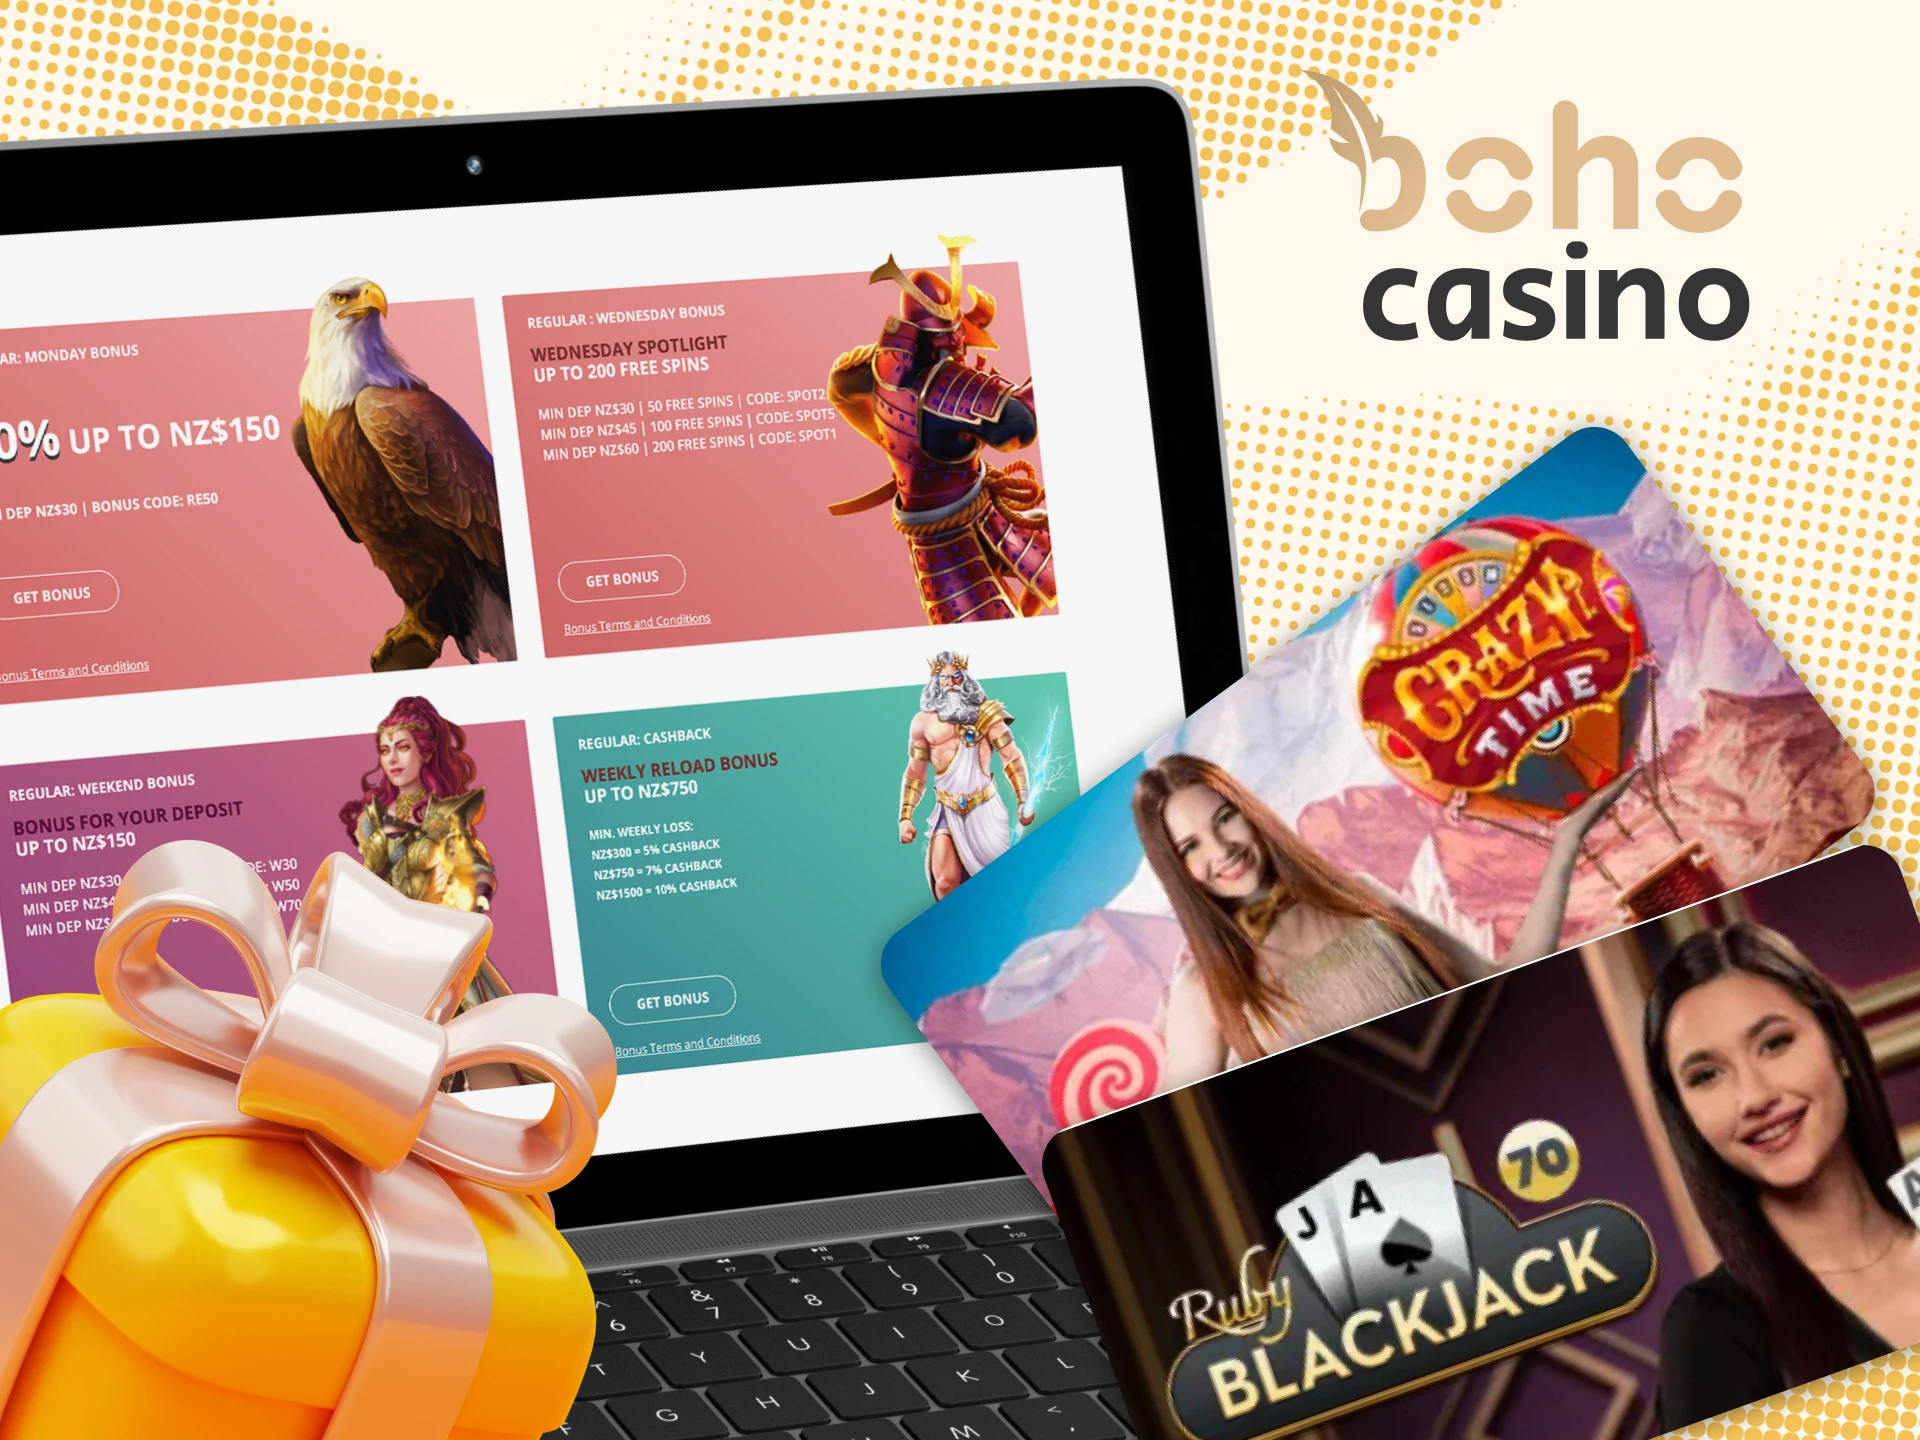 Get Boho Casino's welcome bonus for live casino games.